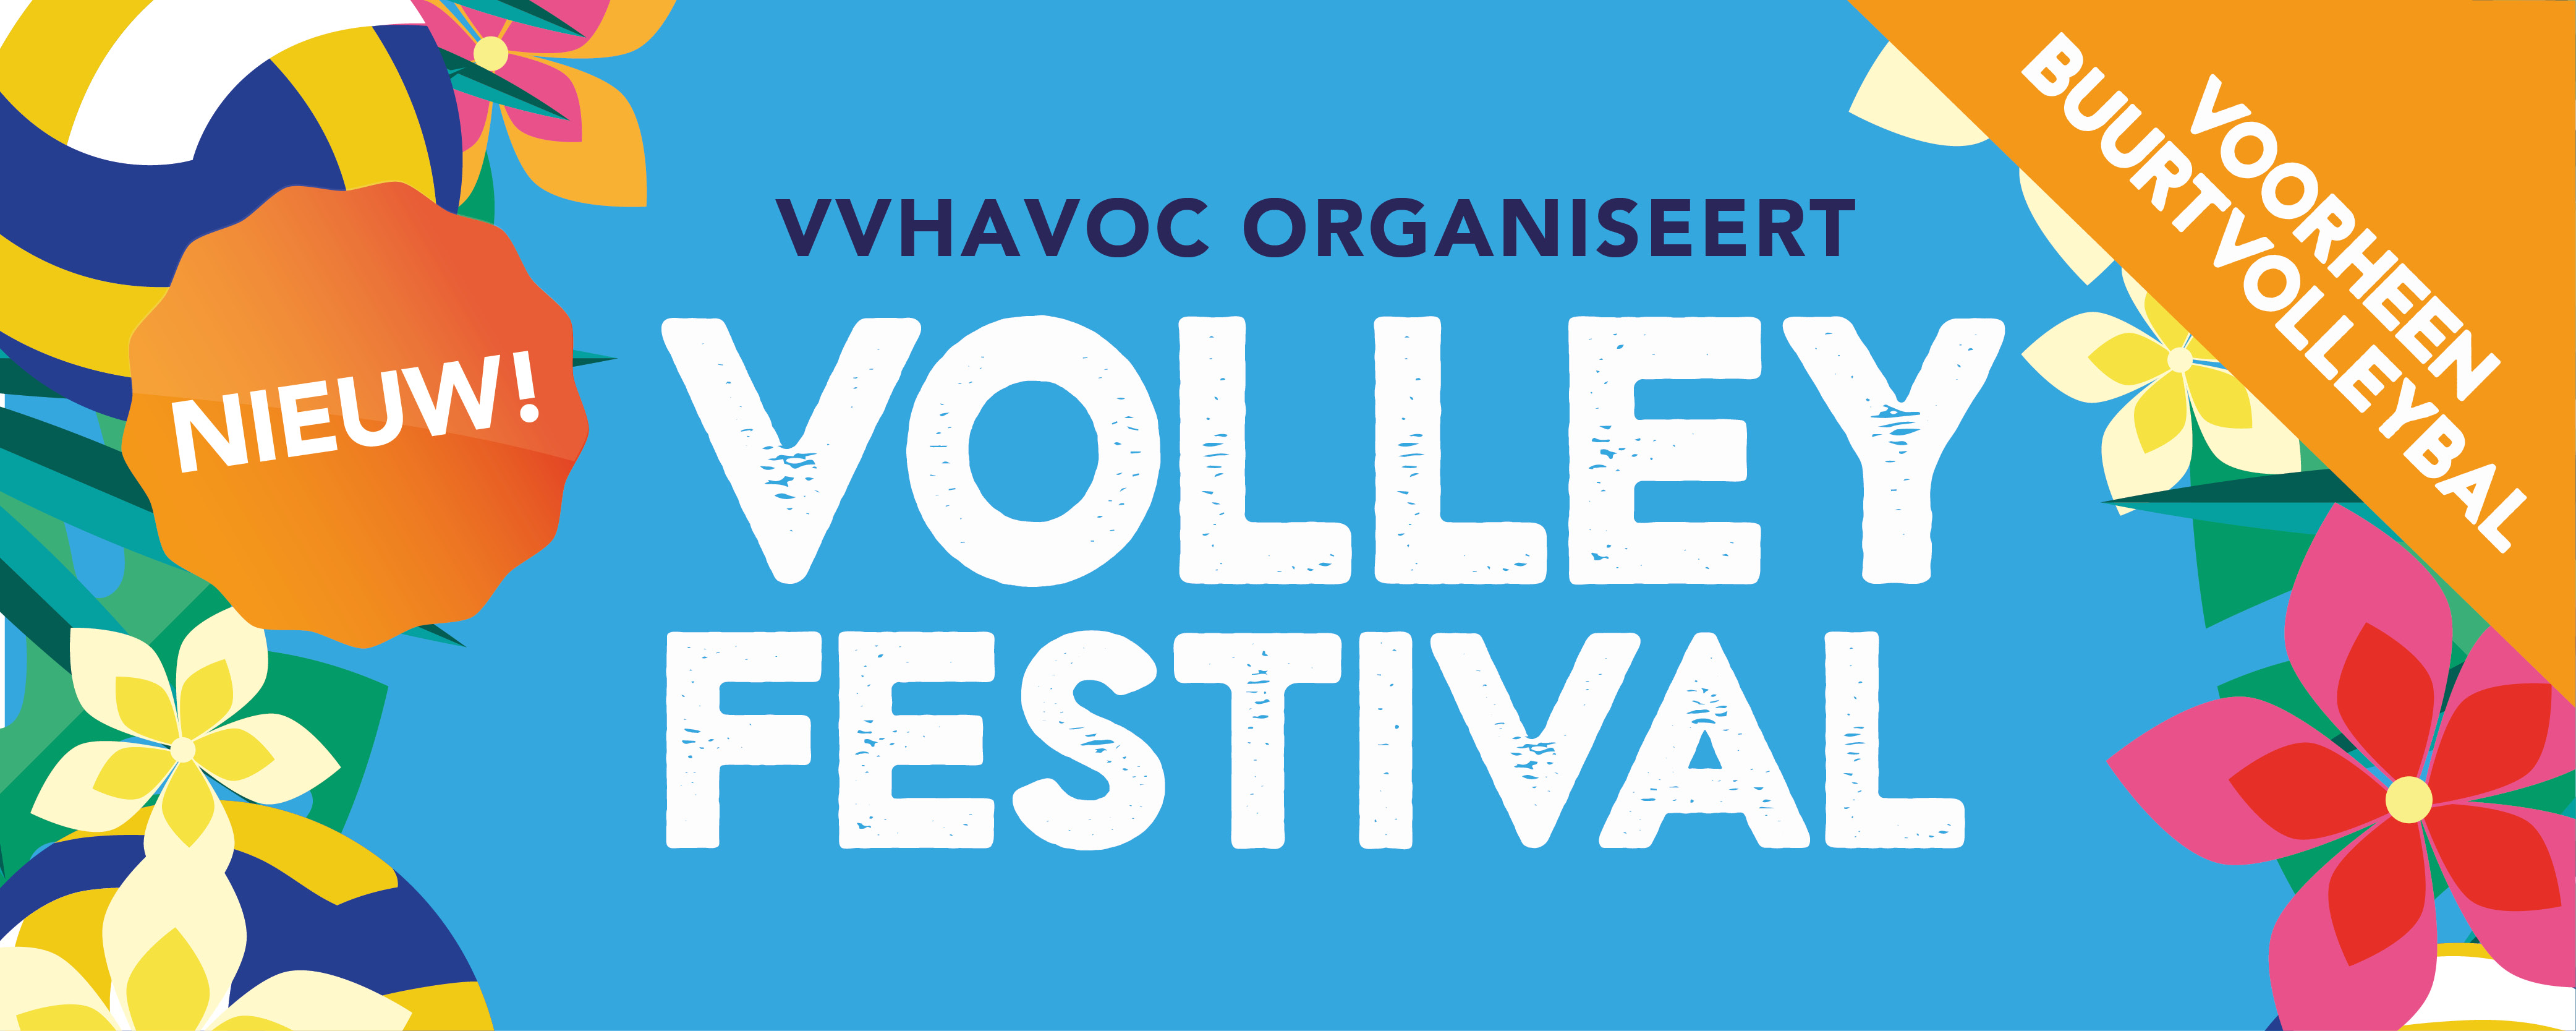 volleyfestival website